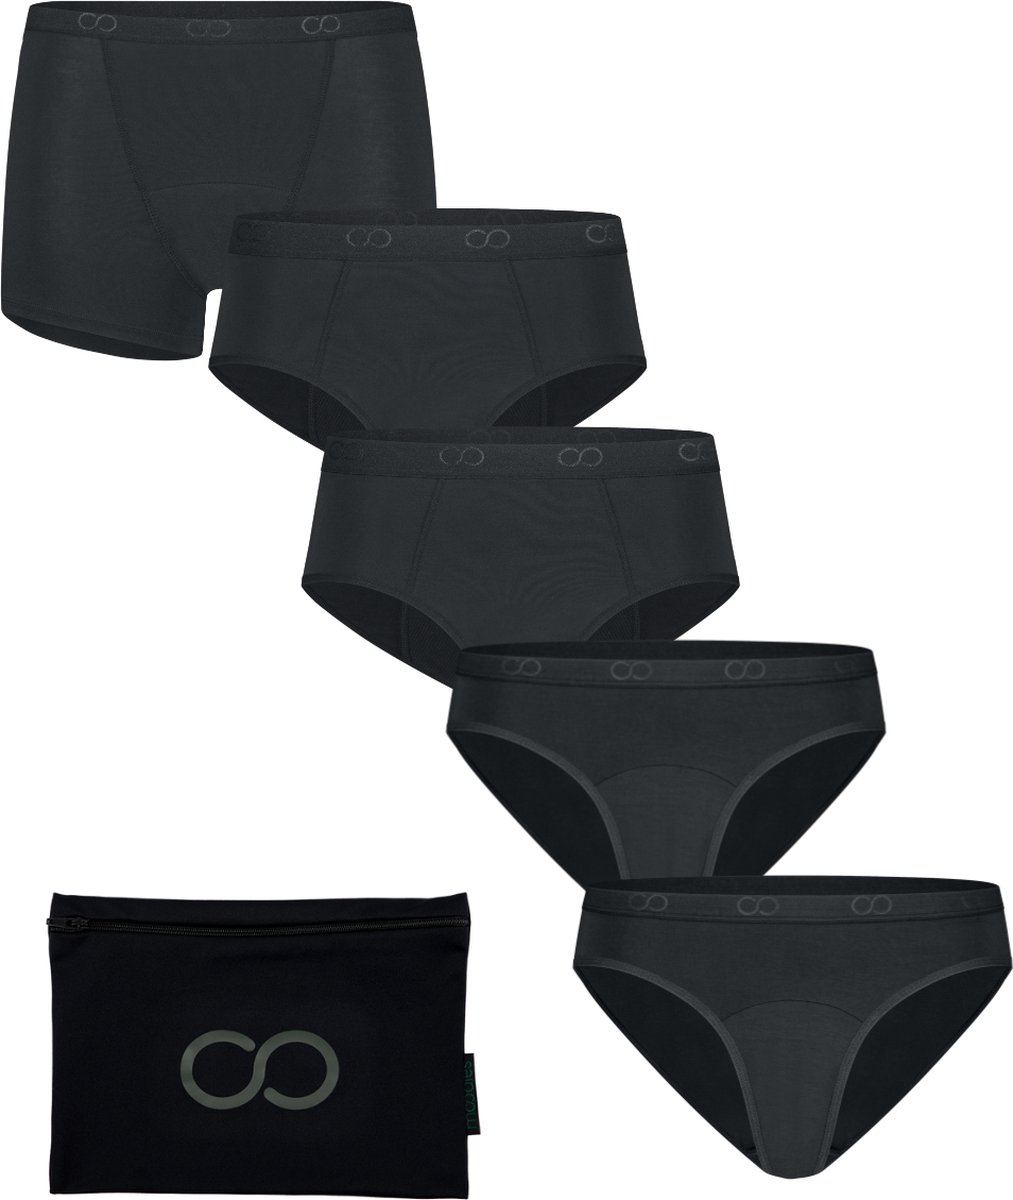 Moodies menstruatie & incontinentie ondergoed - bundel bamboe - 5 stuks - dames - zwart - maat S - period underwear